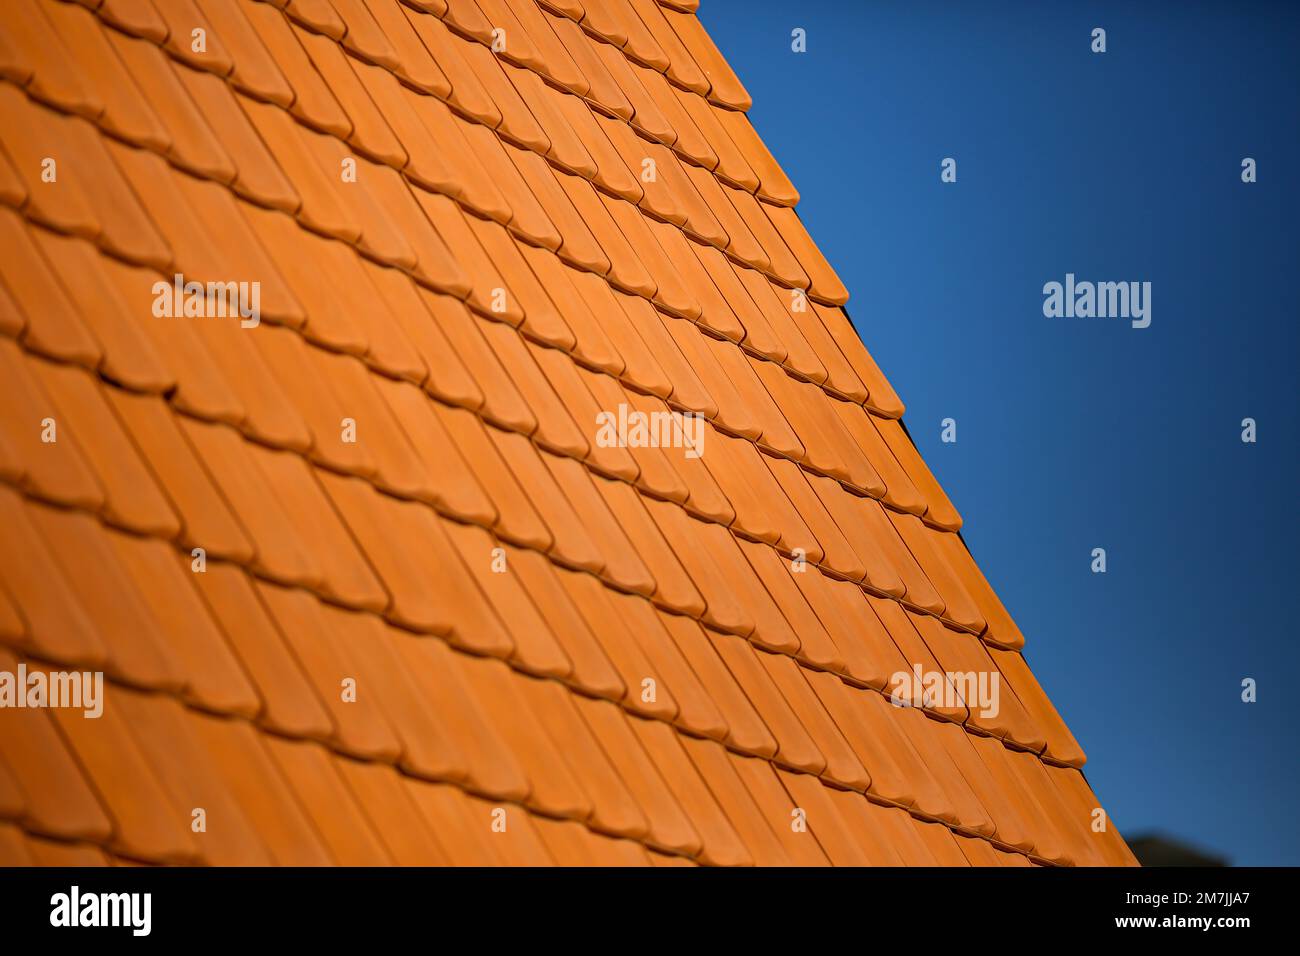 Dettagli dei motivi del tetto in mattoni arancioni con un cielo blu chiaro sullo sfondo. Primo piano dei modelli di architettura delle case. Foto Stock